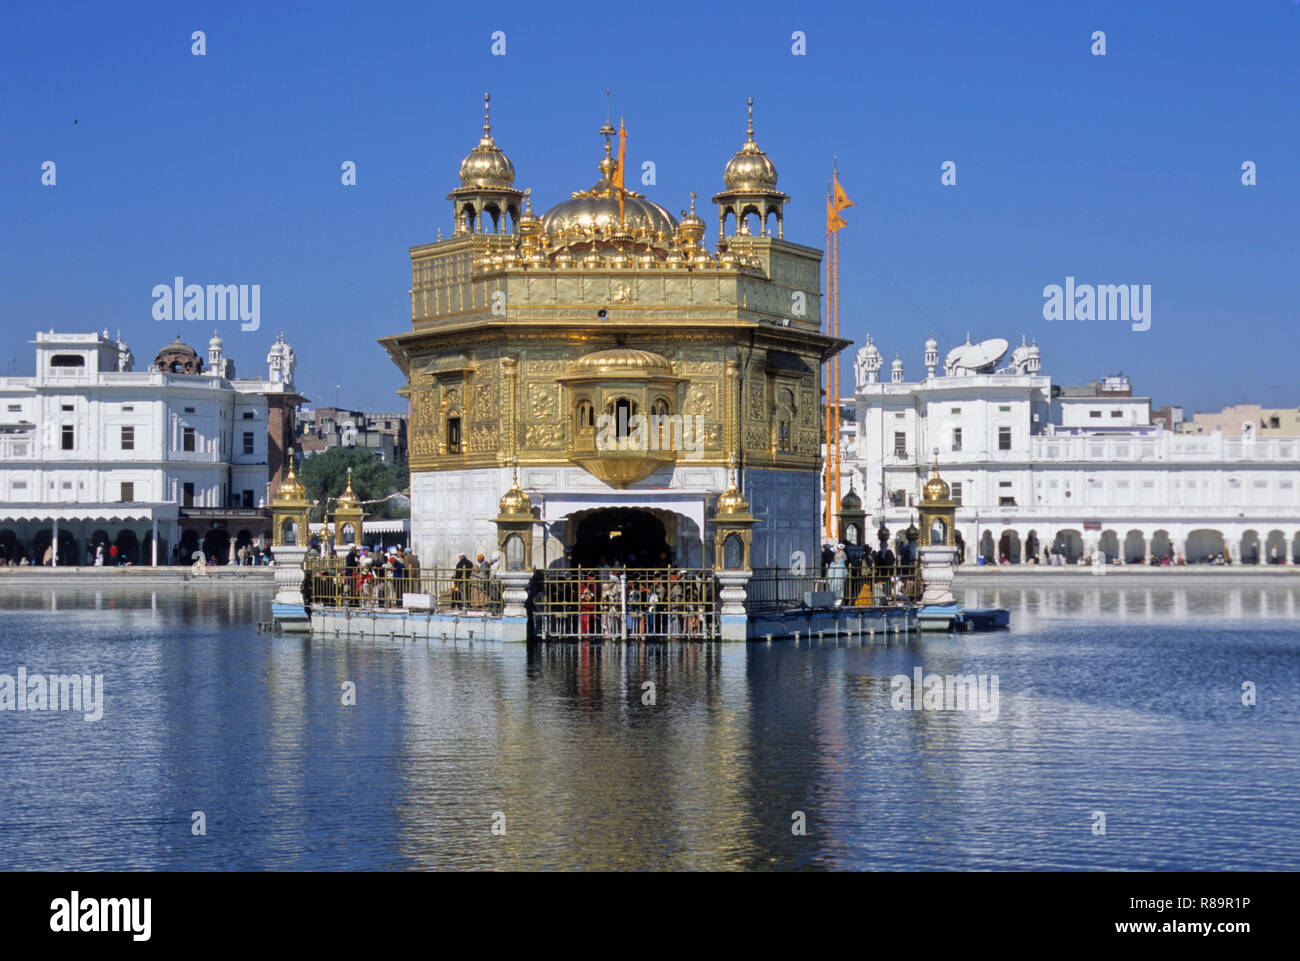 Golden temple holiest sikh shrine, Amritsar, Punjab, India Stock Photo